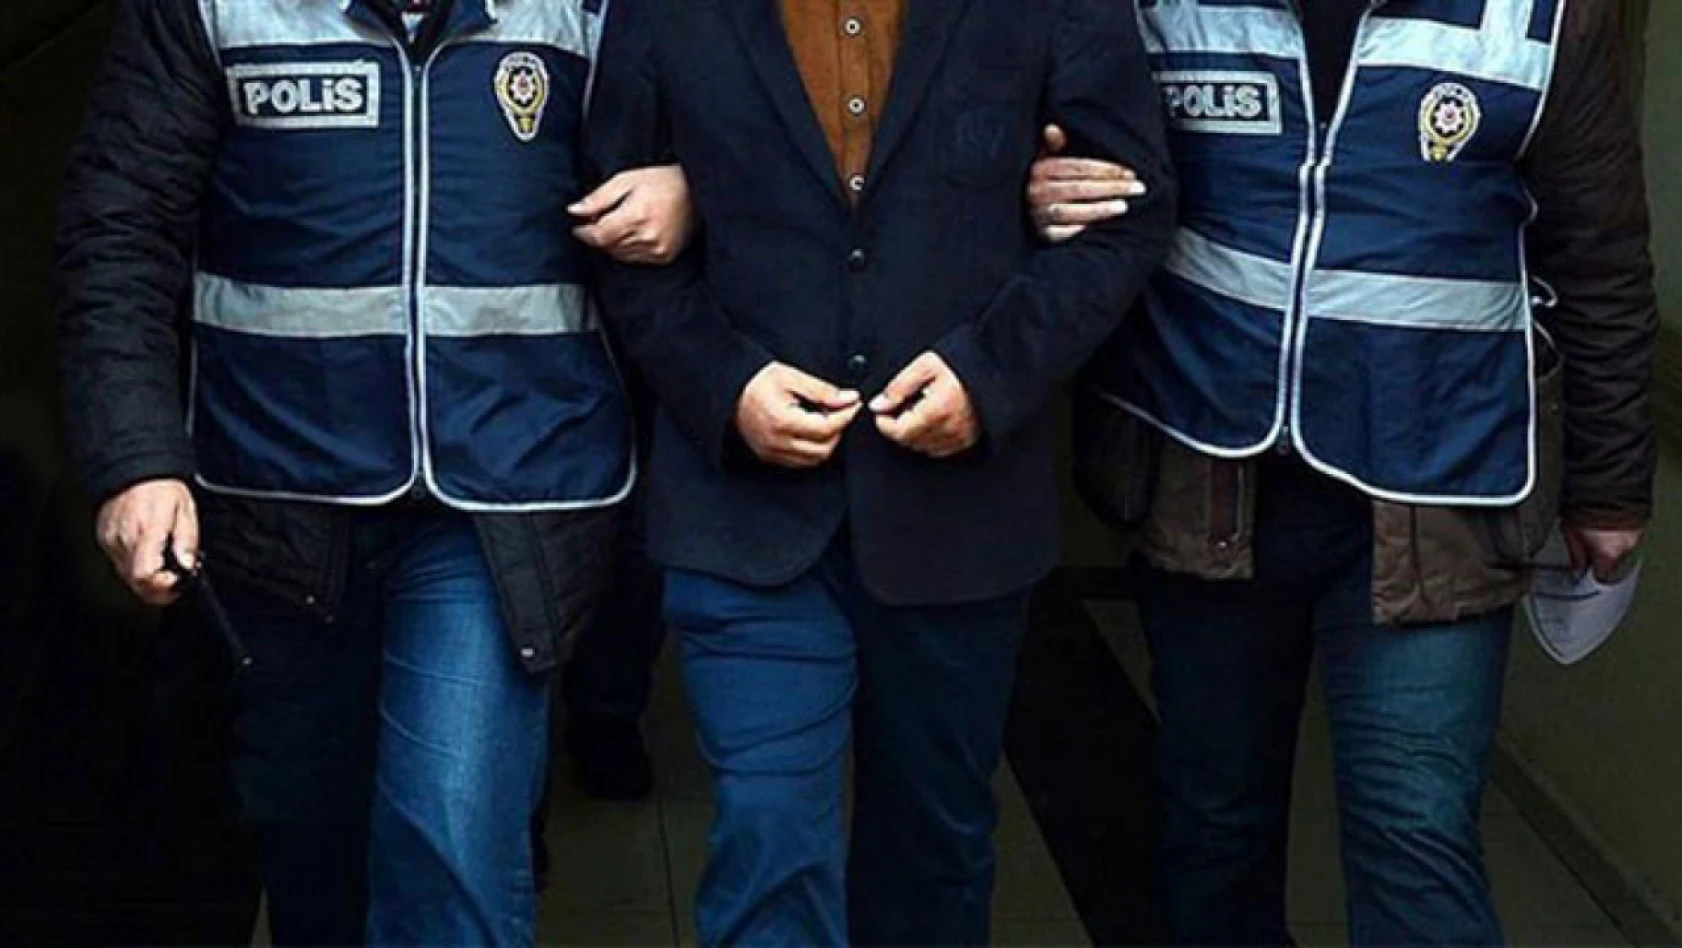 Kayseri'de 52 faili meçhul olay aydınlatılırken 61 faili firar şahıs yakalandı